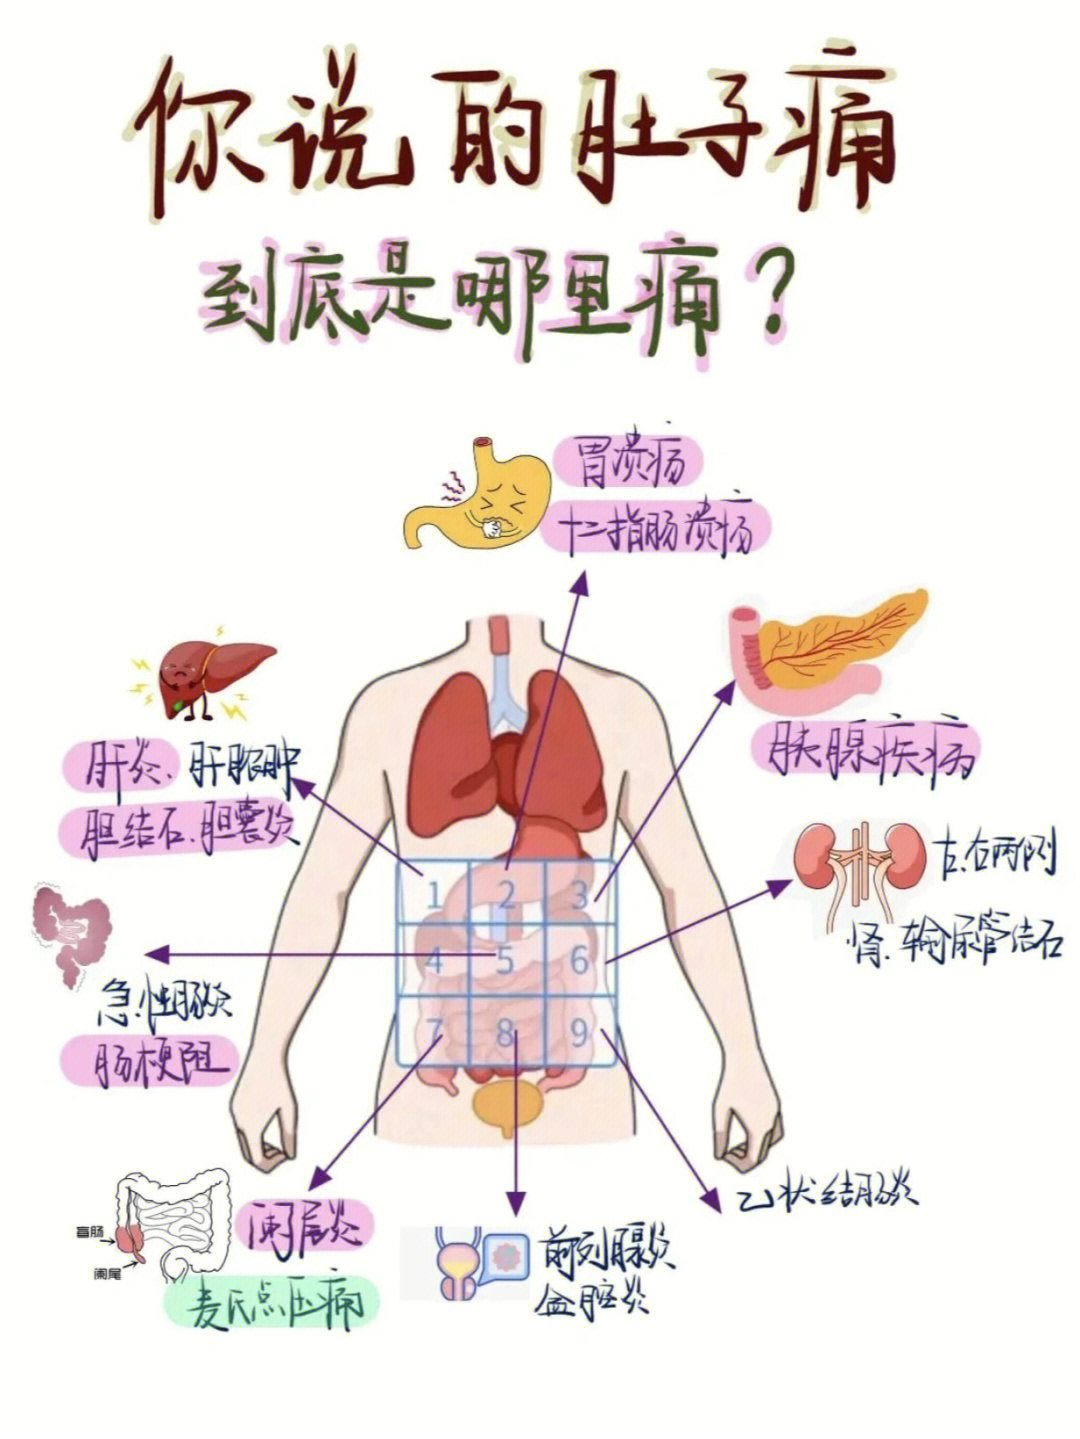 腹部分区九分法器官图片